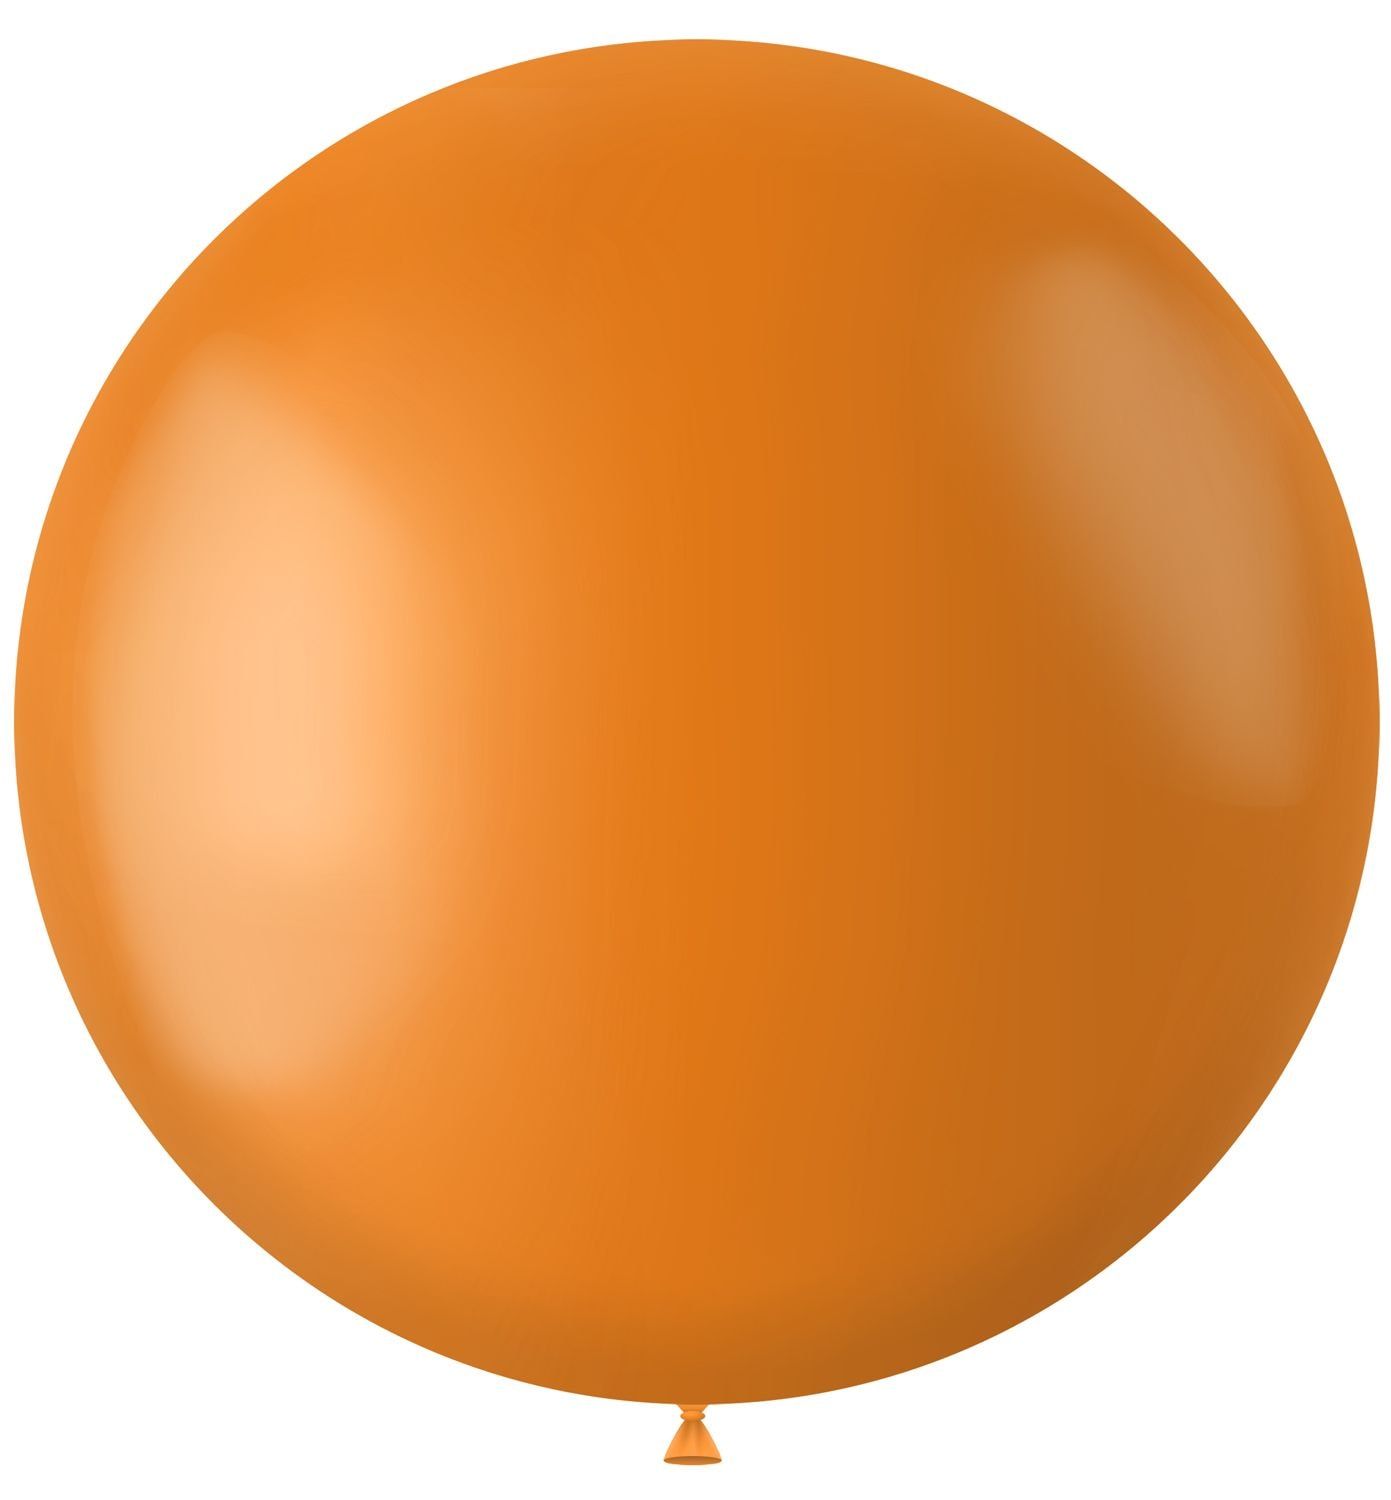 Knal oranje ballon matte kleur